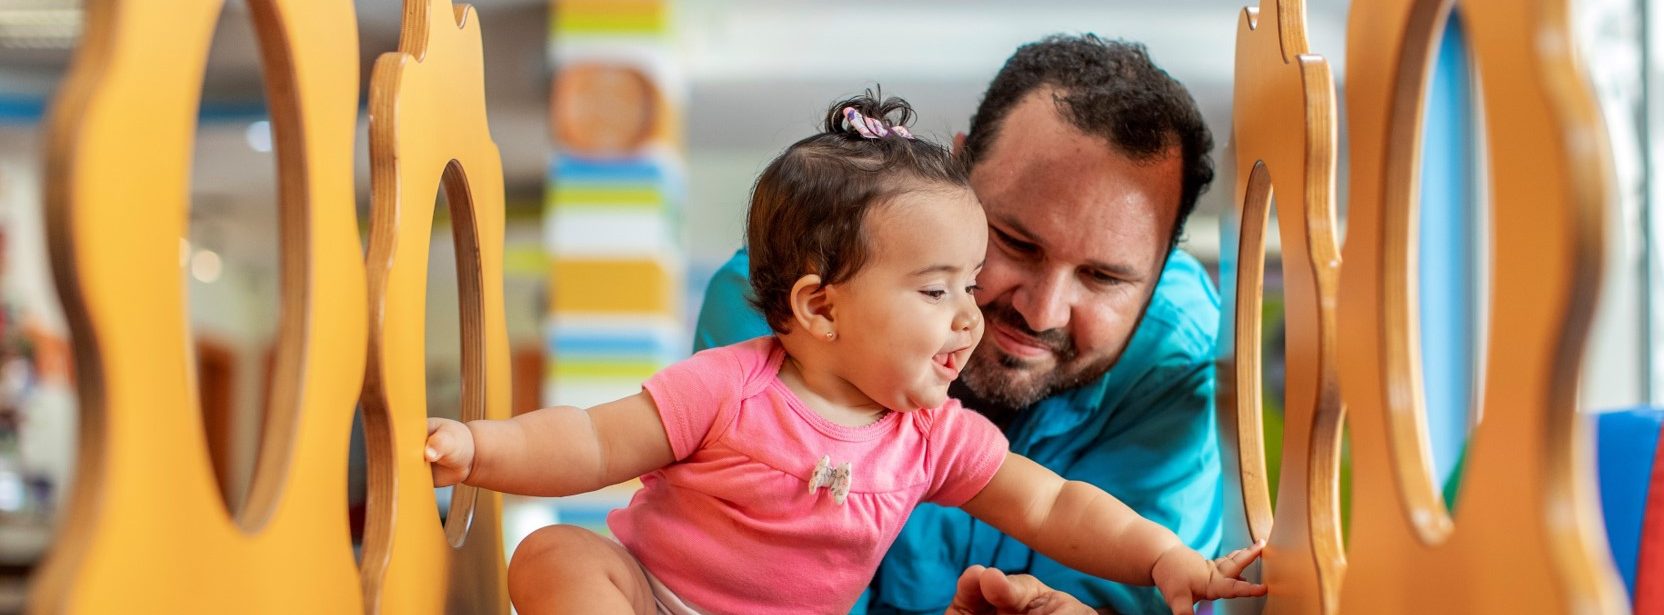 Paternidad activa es asumir el rol de padre - Diario El Salvador